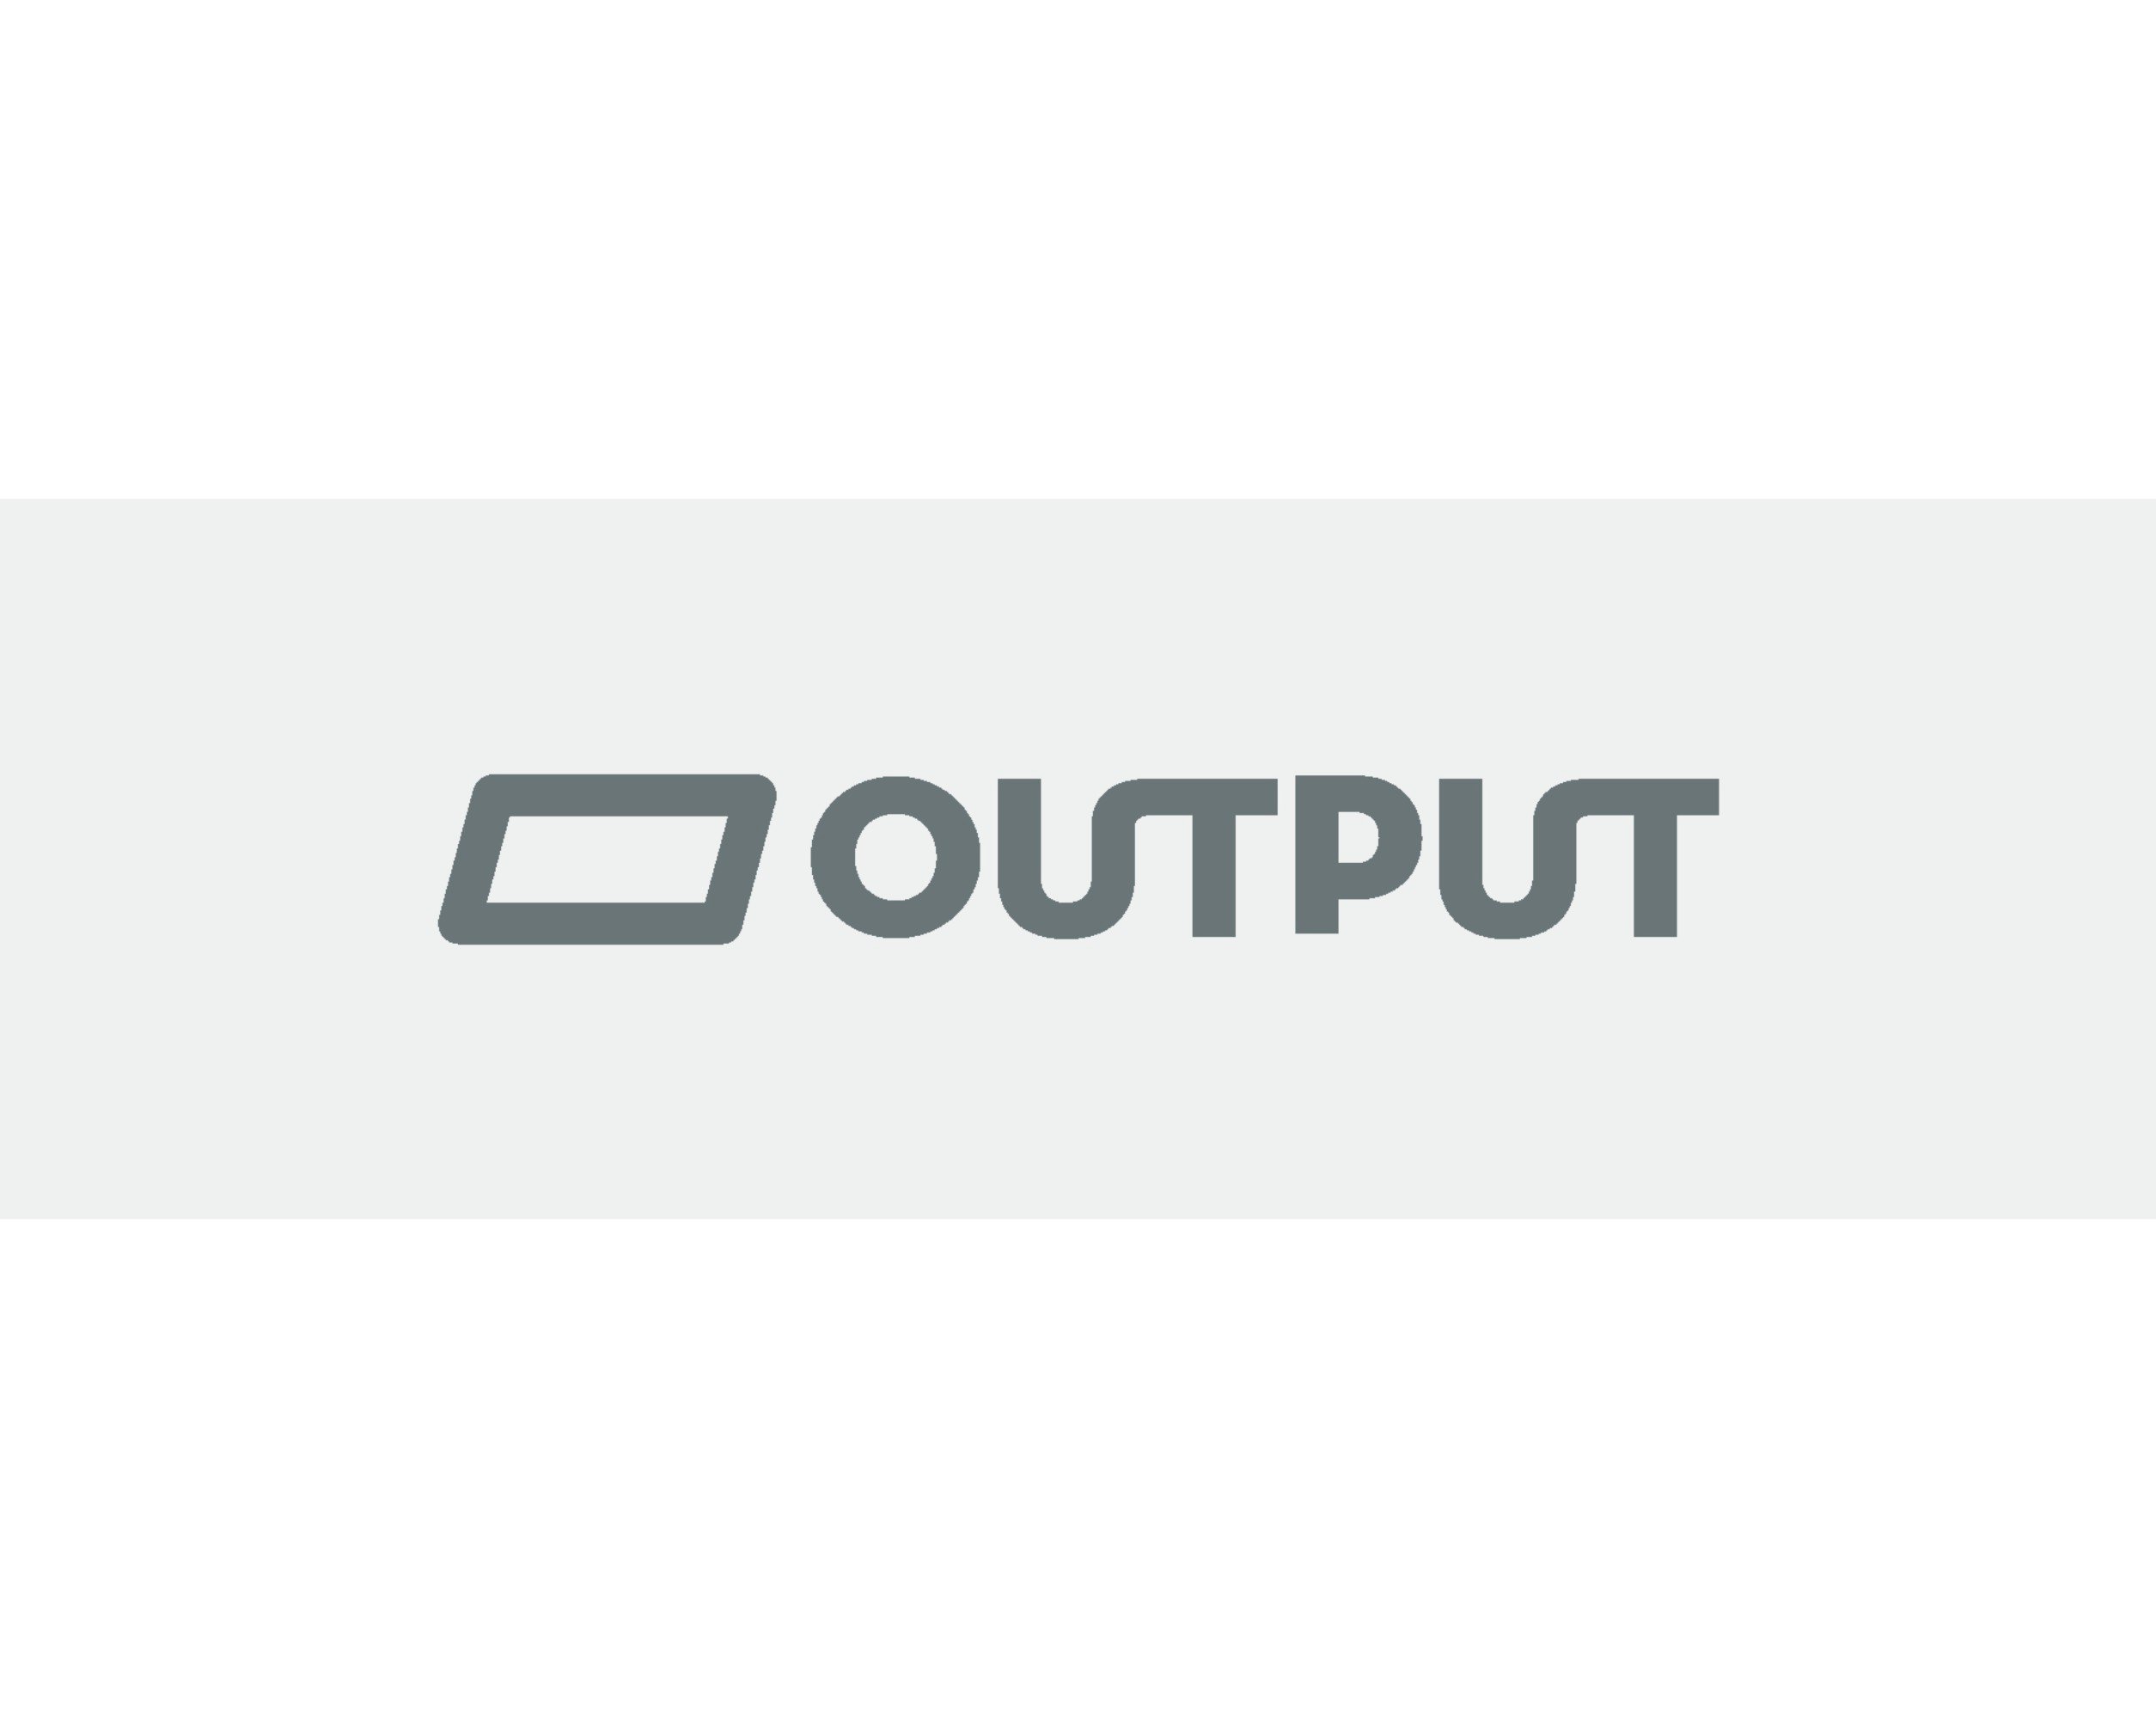 Trademark Logo OUTPUT